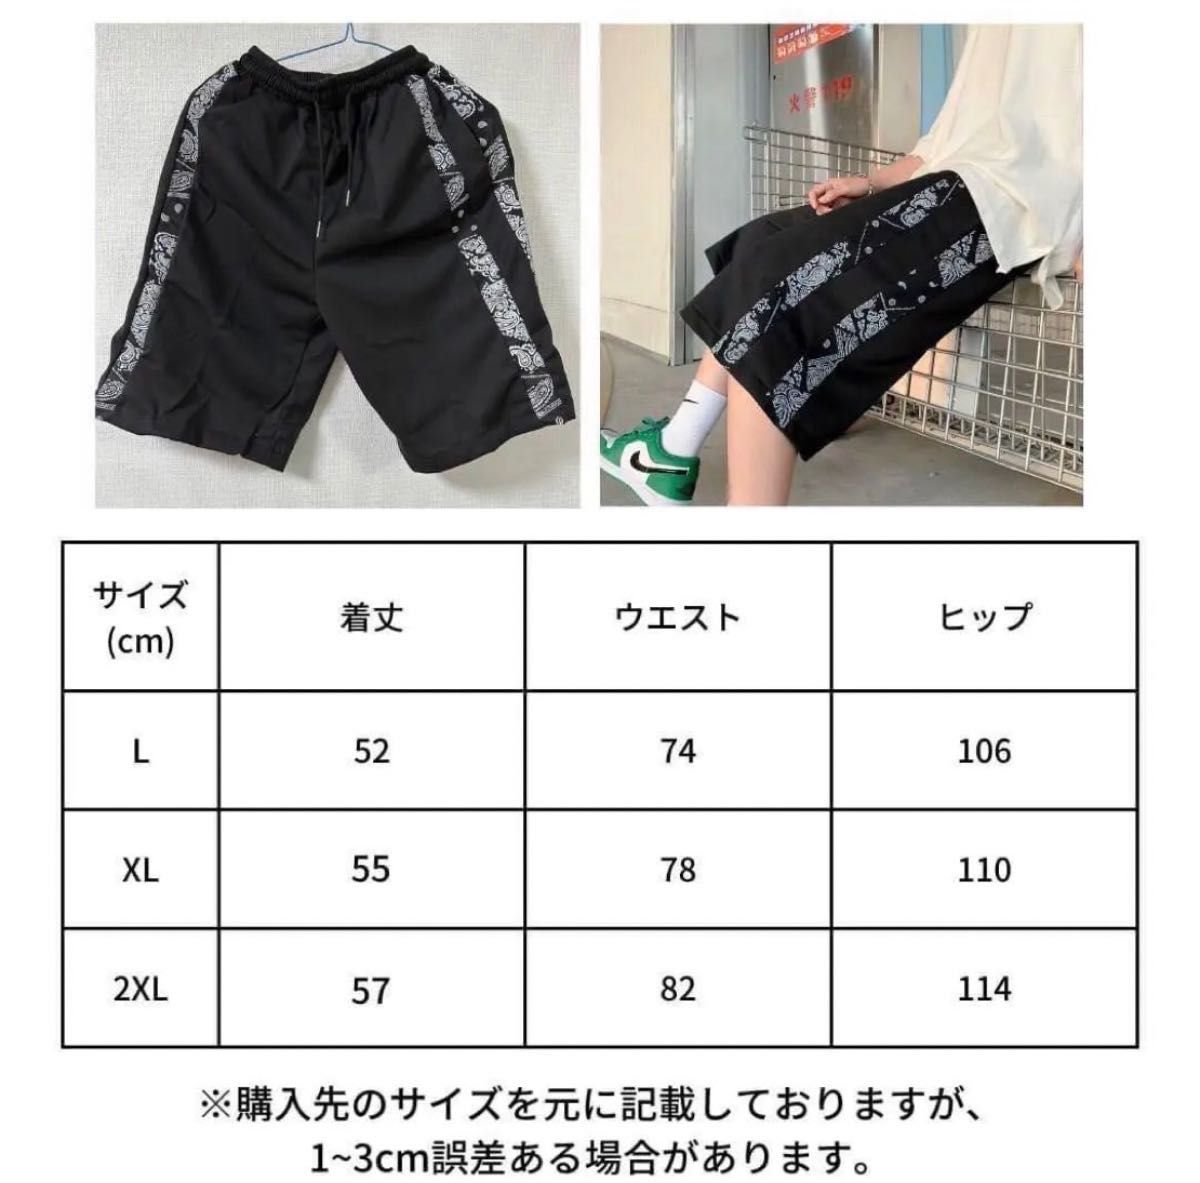 ペイズリー柄 ハーフパンツ ブラック スボン ショートパンツ メンズ 【XL】